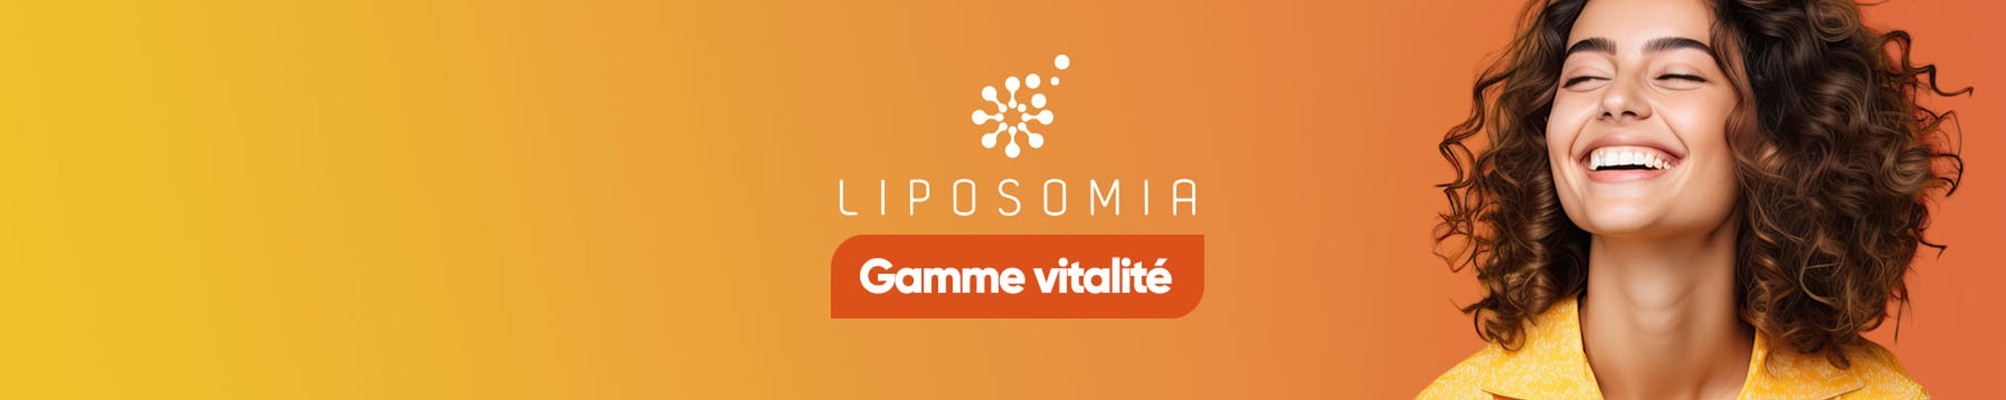 Catégorie : Liposomia Vitalité